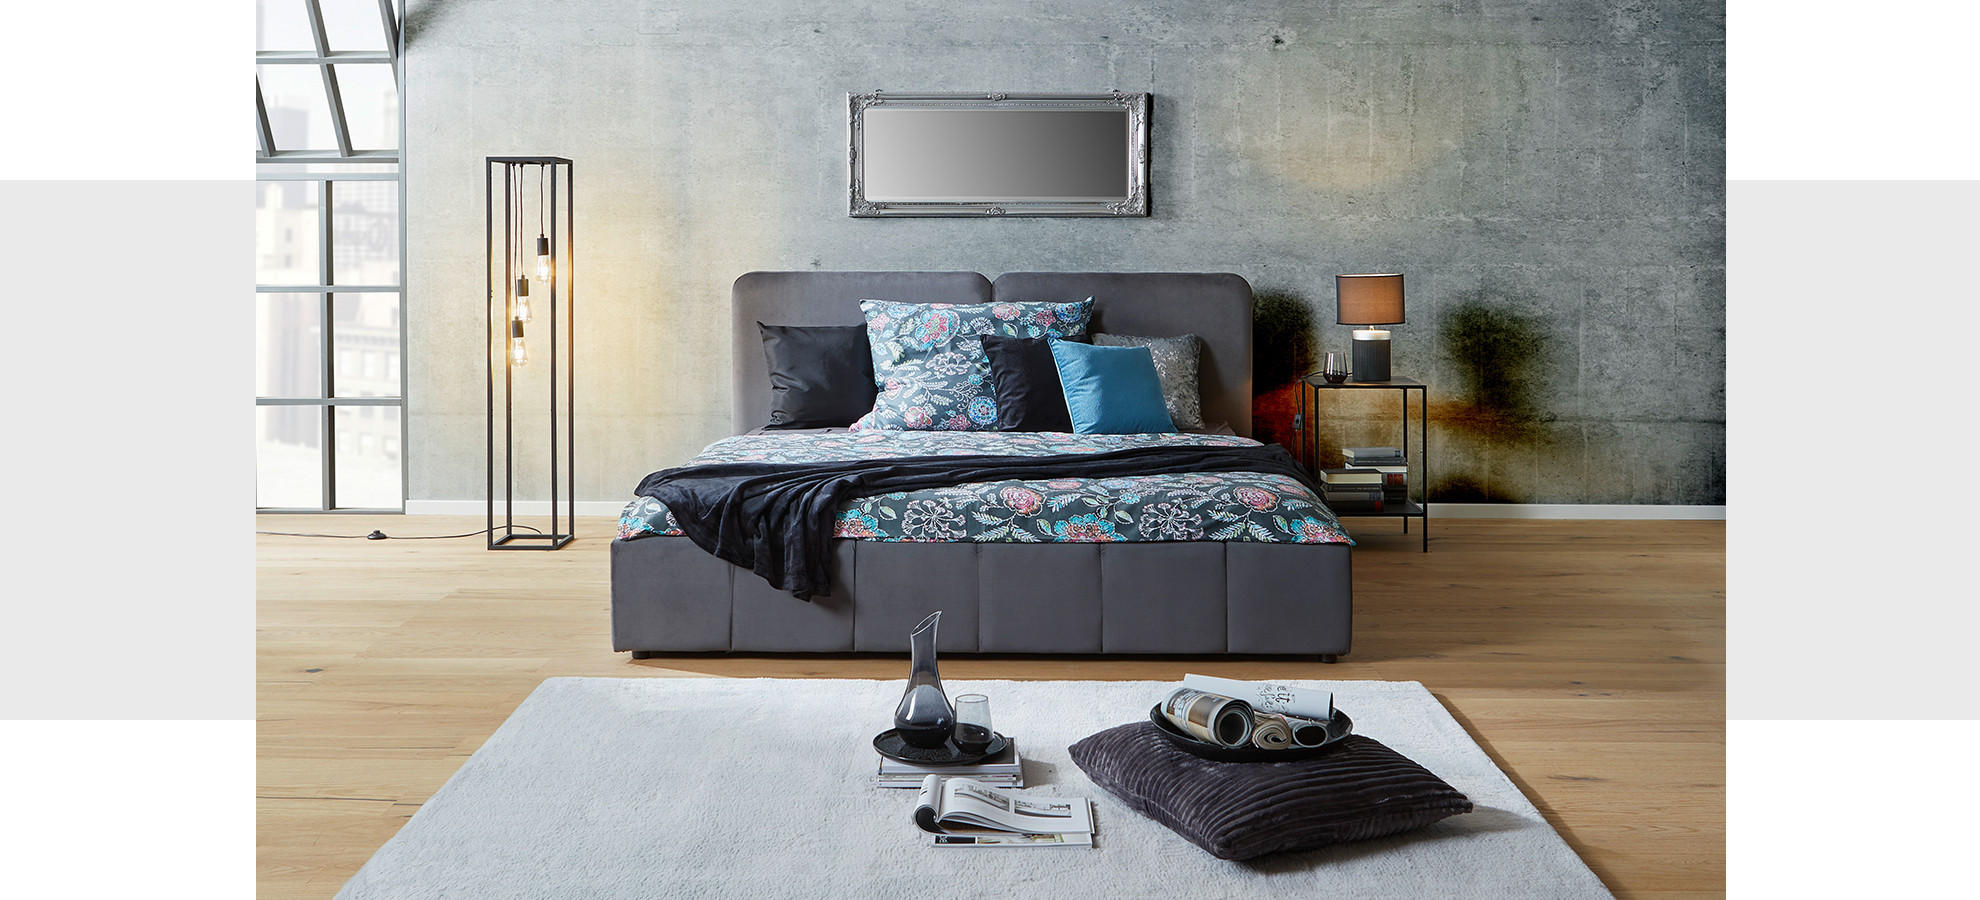 Schlafzimmer in Grau: Graue Wand, grauer Nachtisch und graues Bett - Elganz